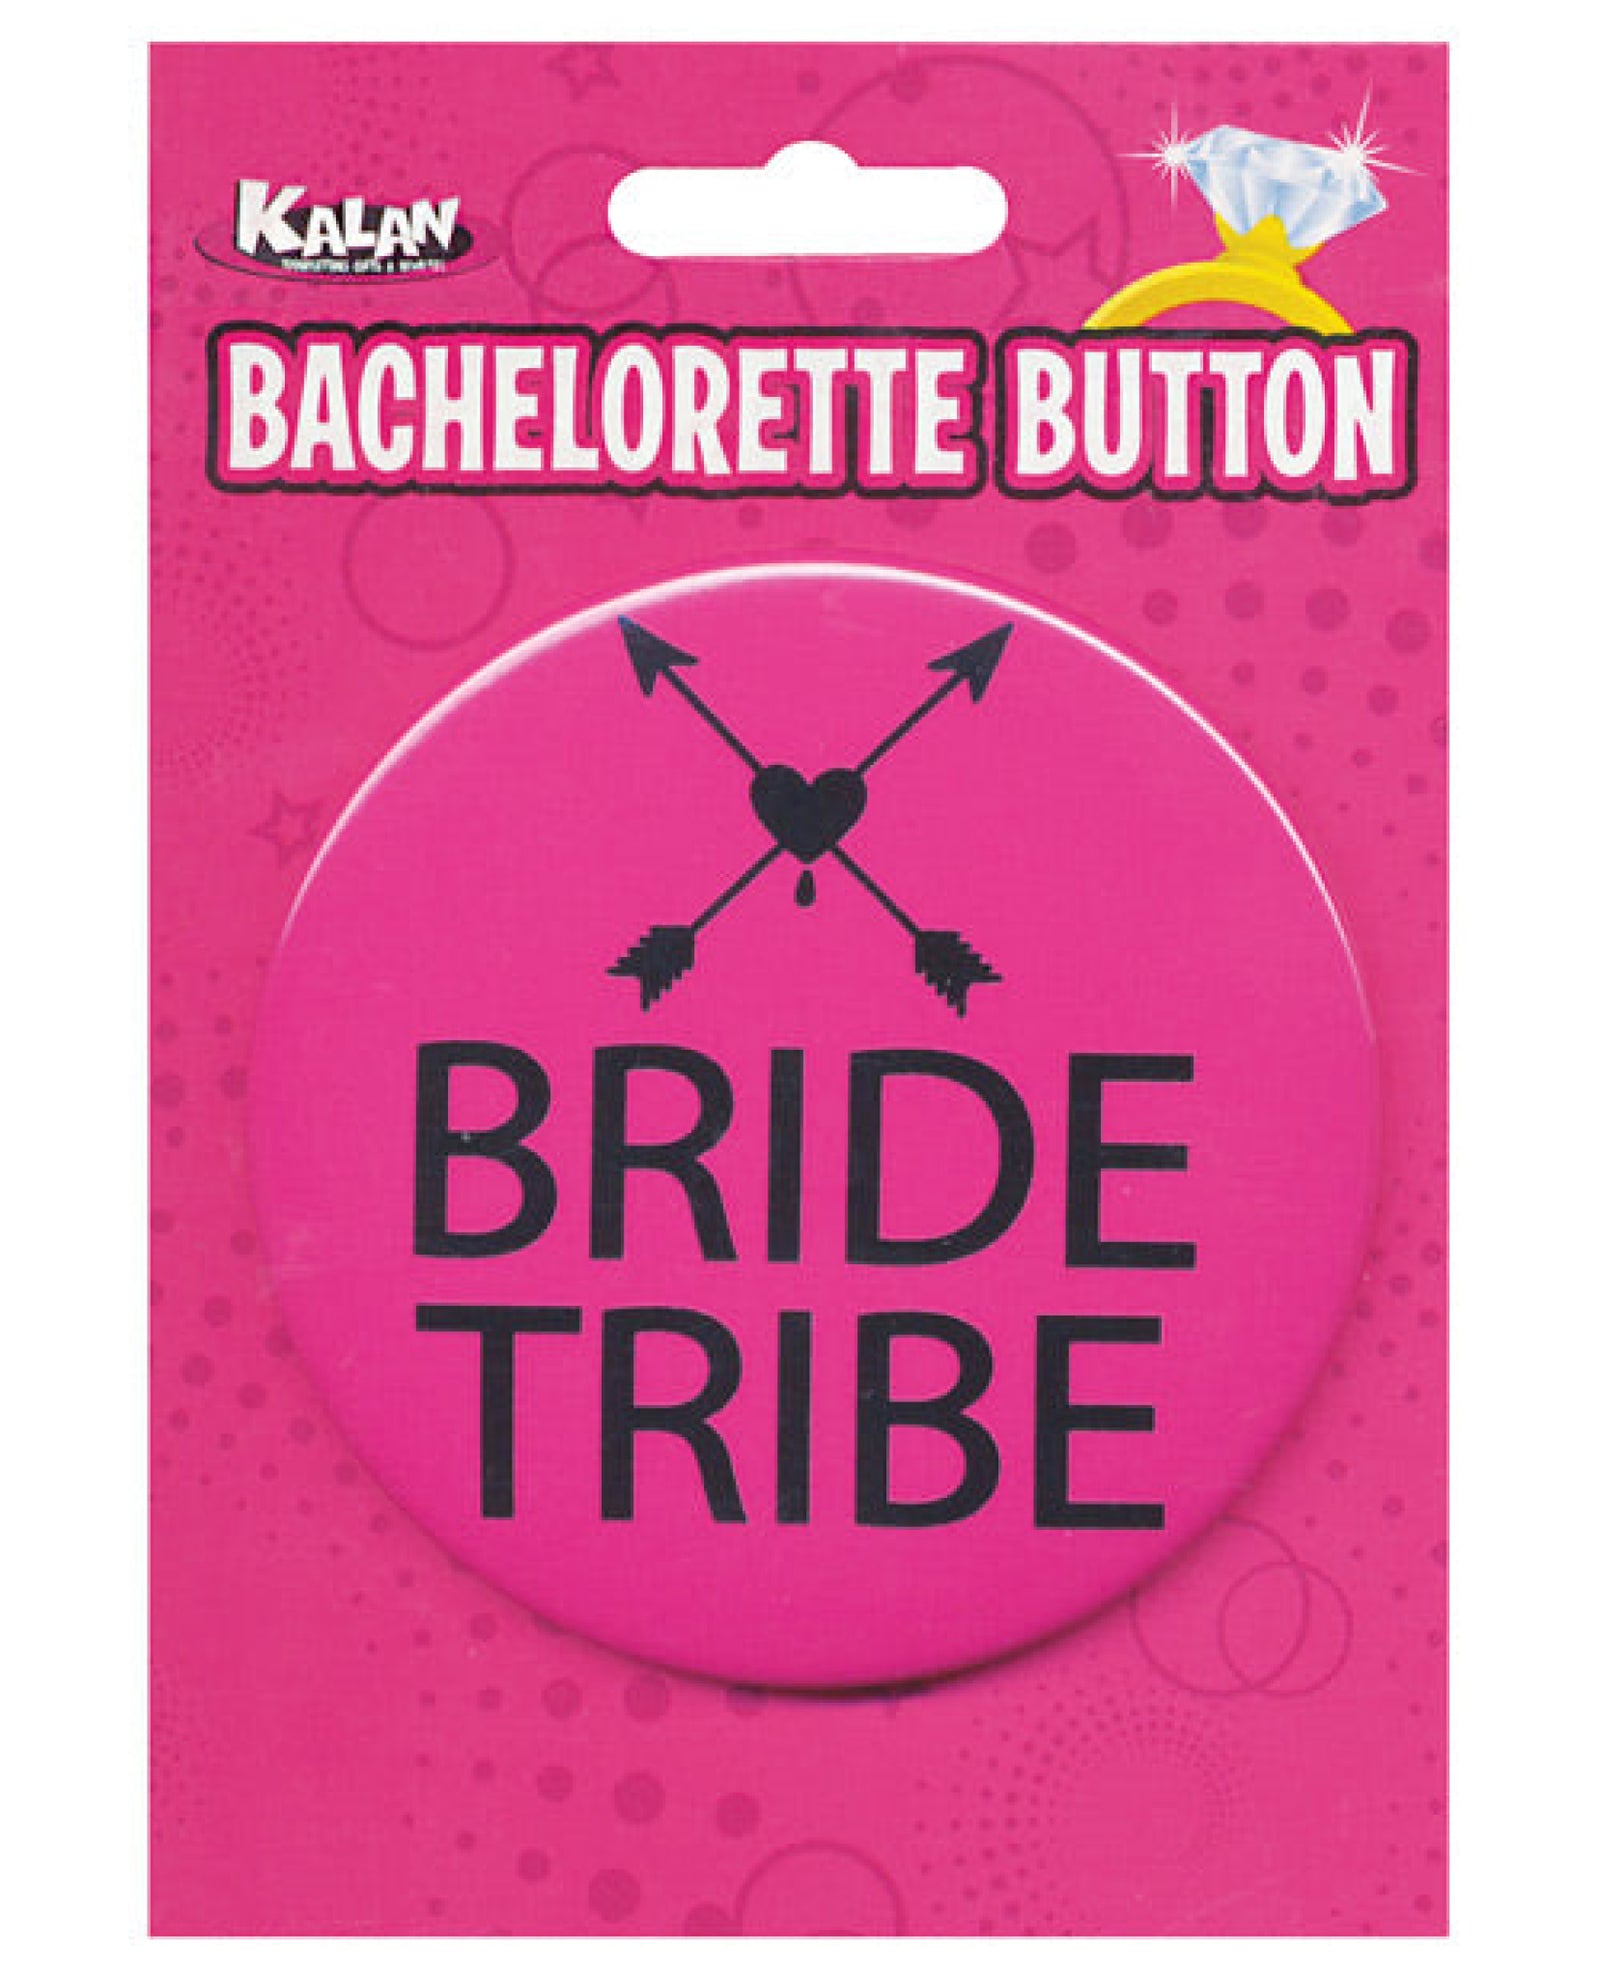 Bachelorette Button - Bride Tribe Pink-black Kalan